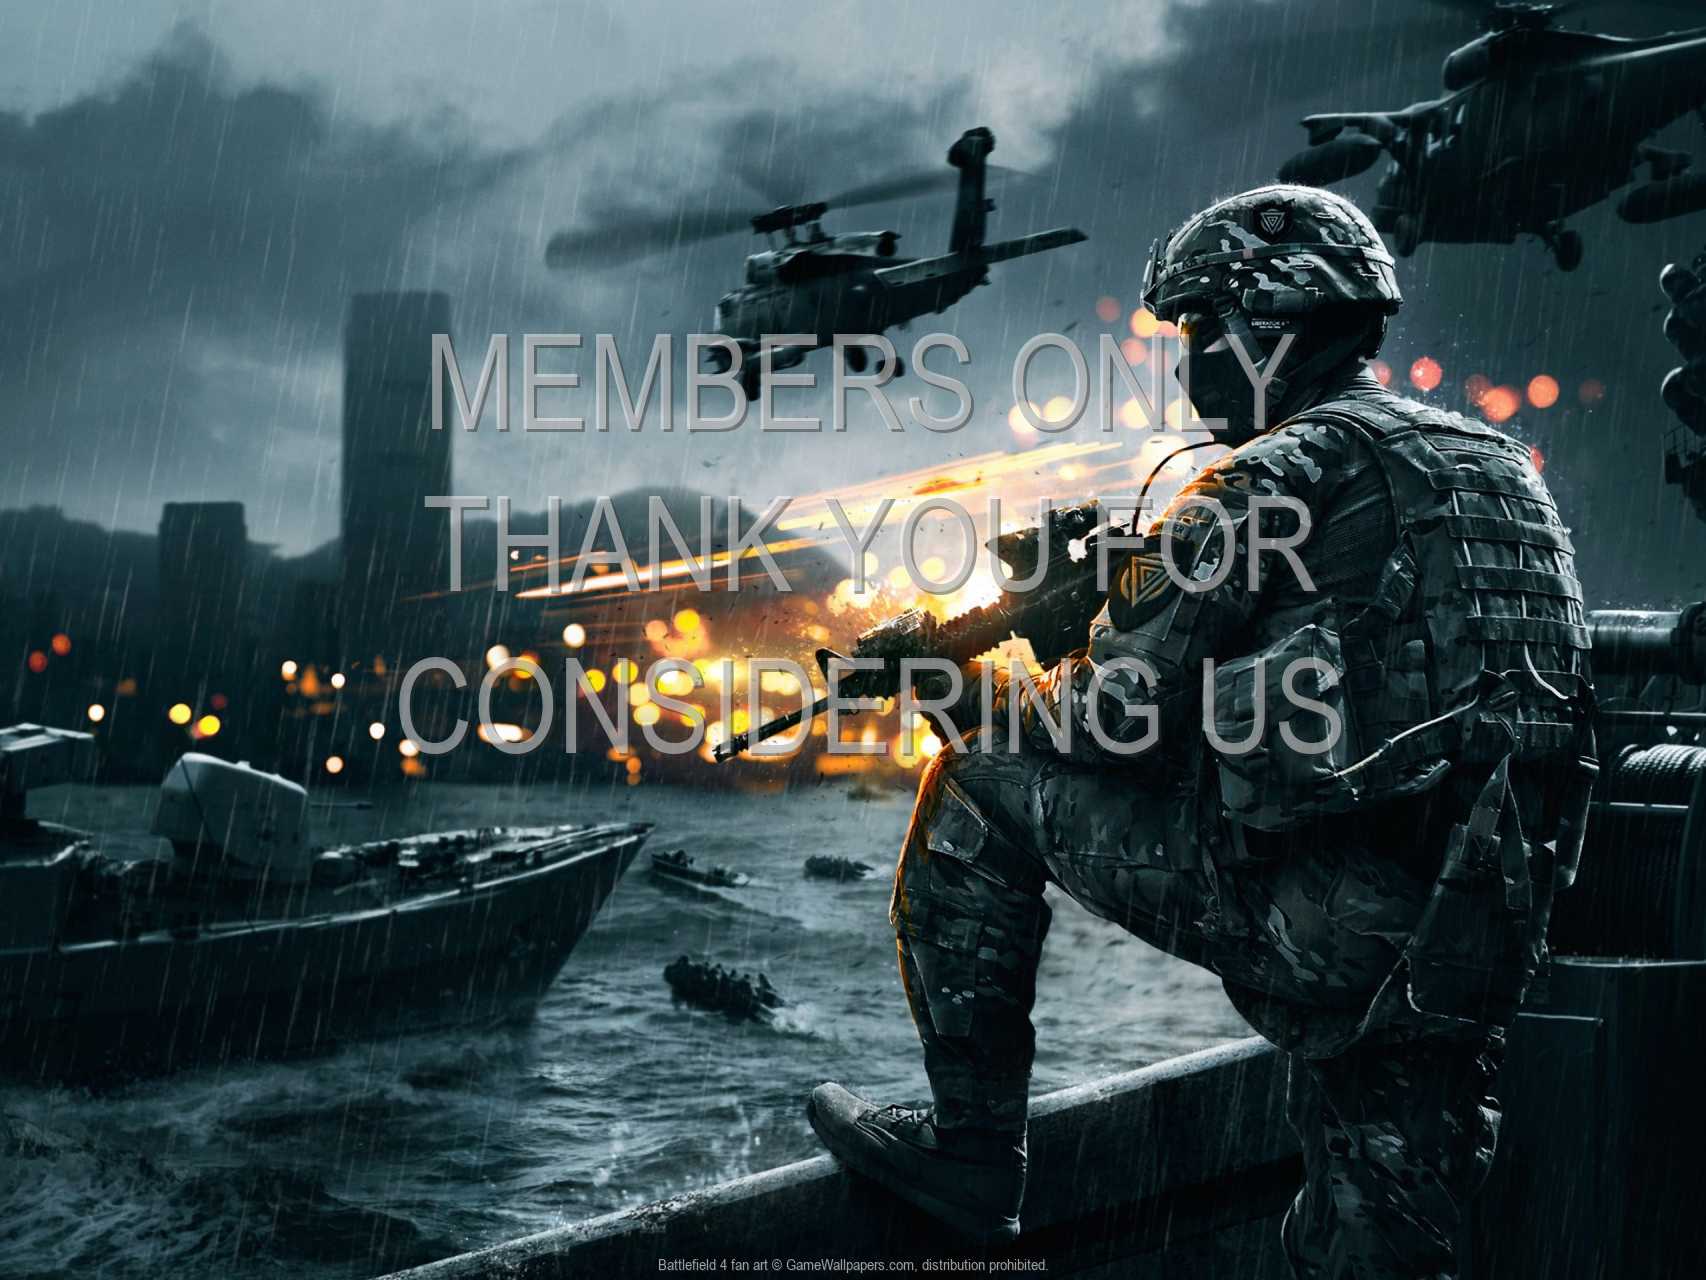 Battlefield 4 fan art 720p%20Horizontal Mobile wallpaper or background 01